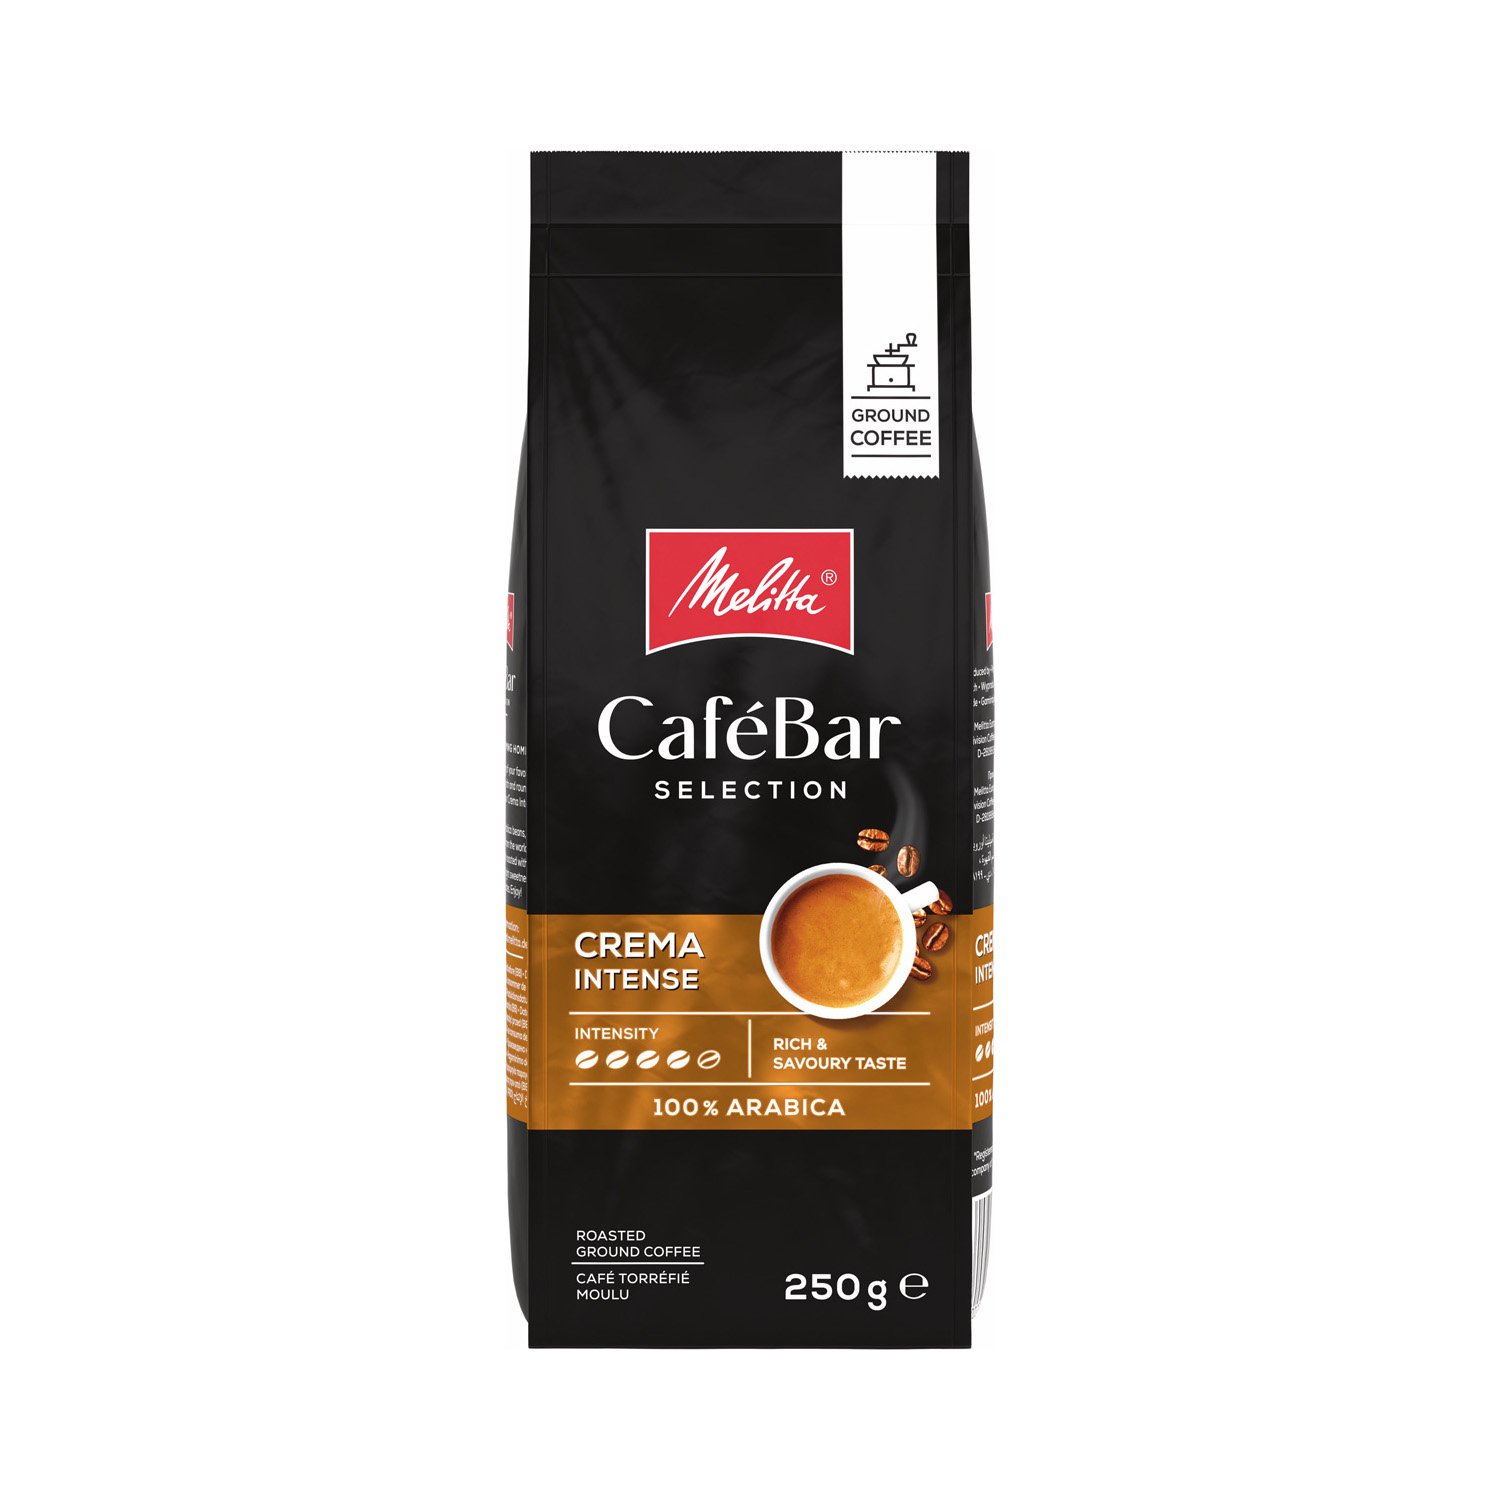 Melitta CafeBar Selection Crema Intense Öğütülmüş Kahve 250GR